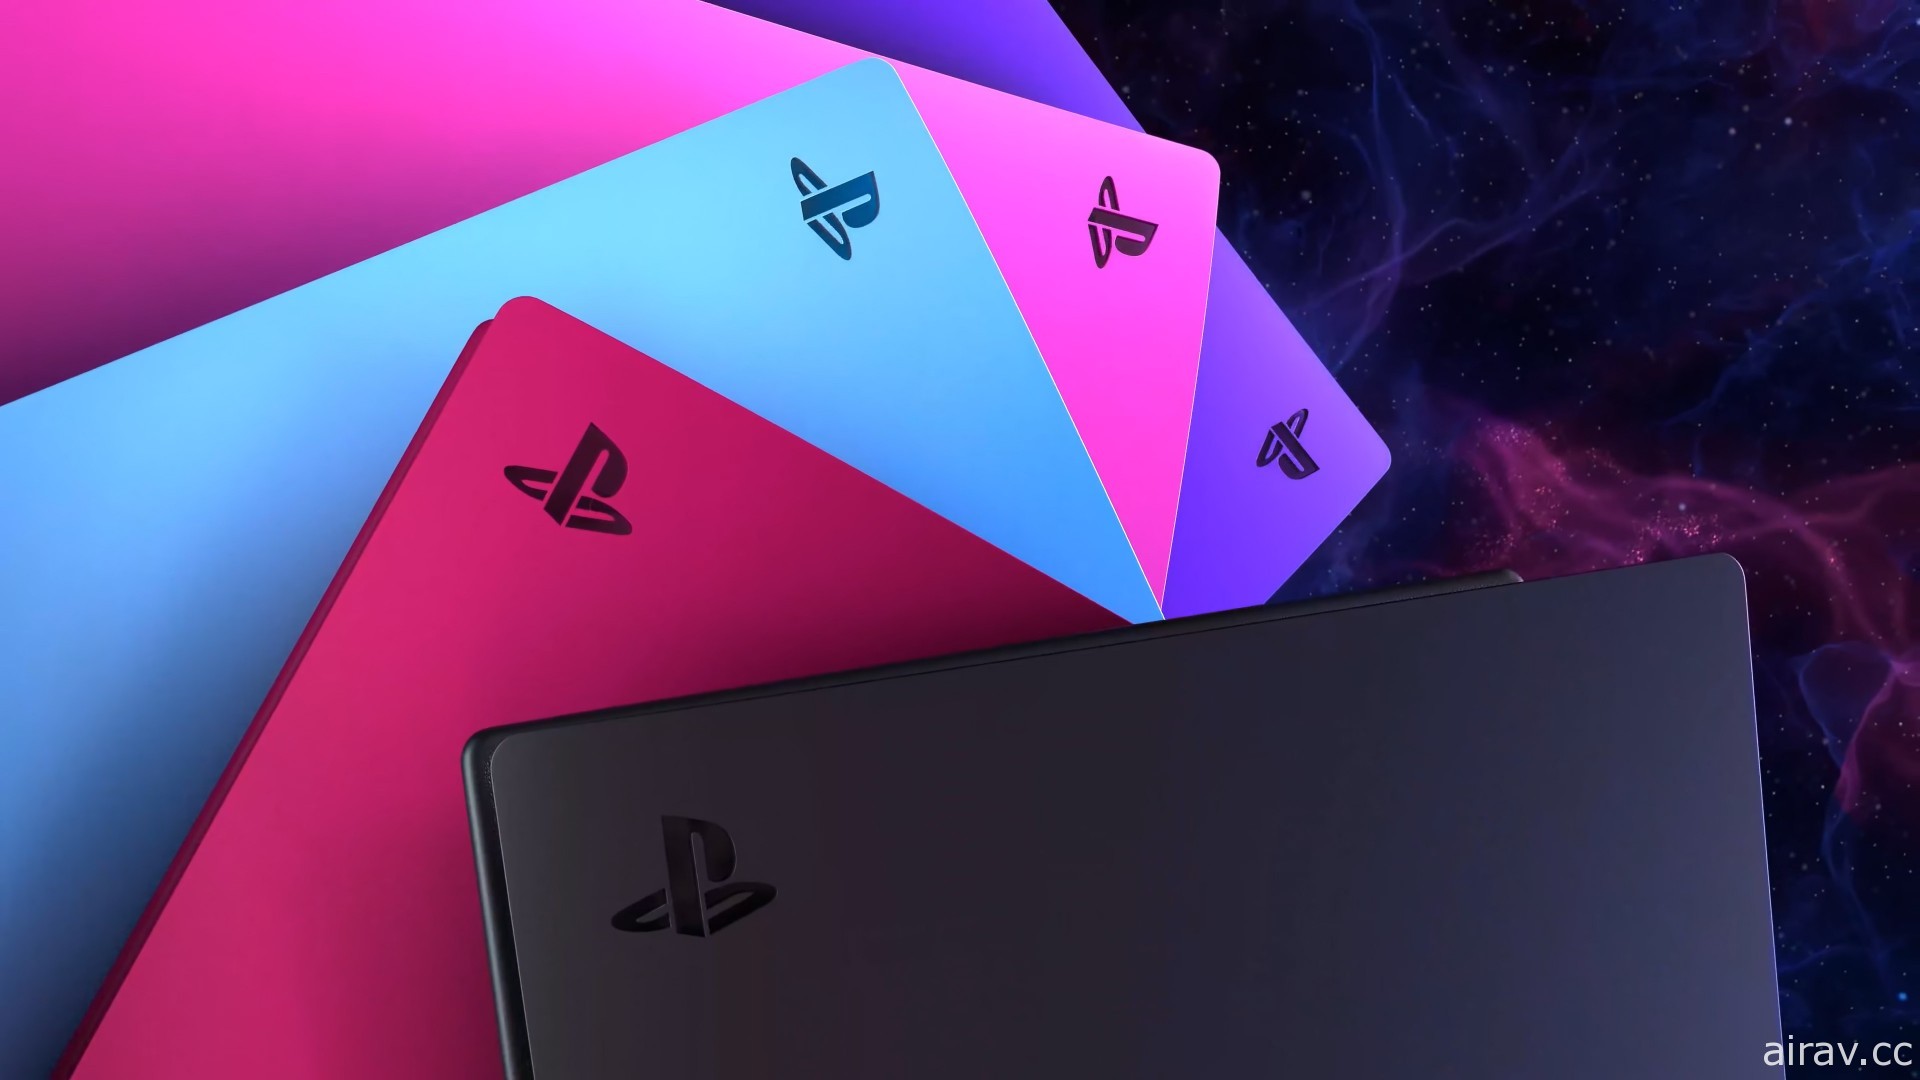 全新银河系色彩配色 PS5 主机护盖“星光蓝”“银河紫”“星幻粉”6 月在台上市